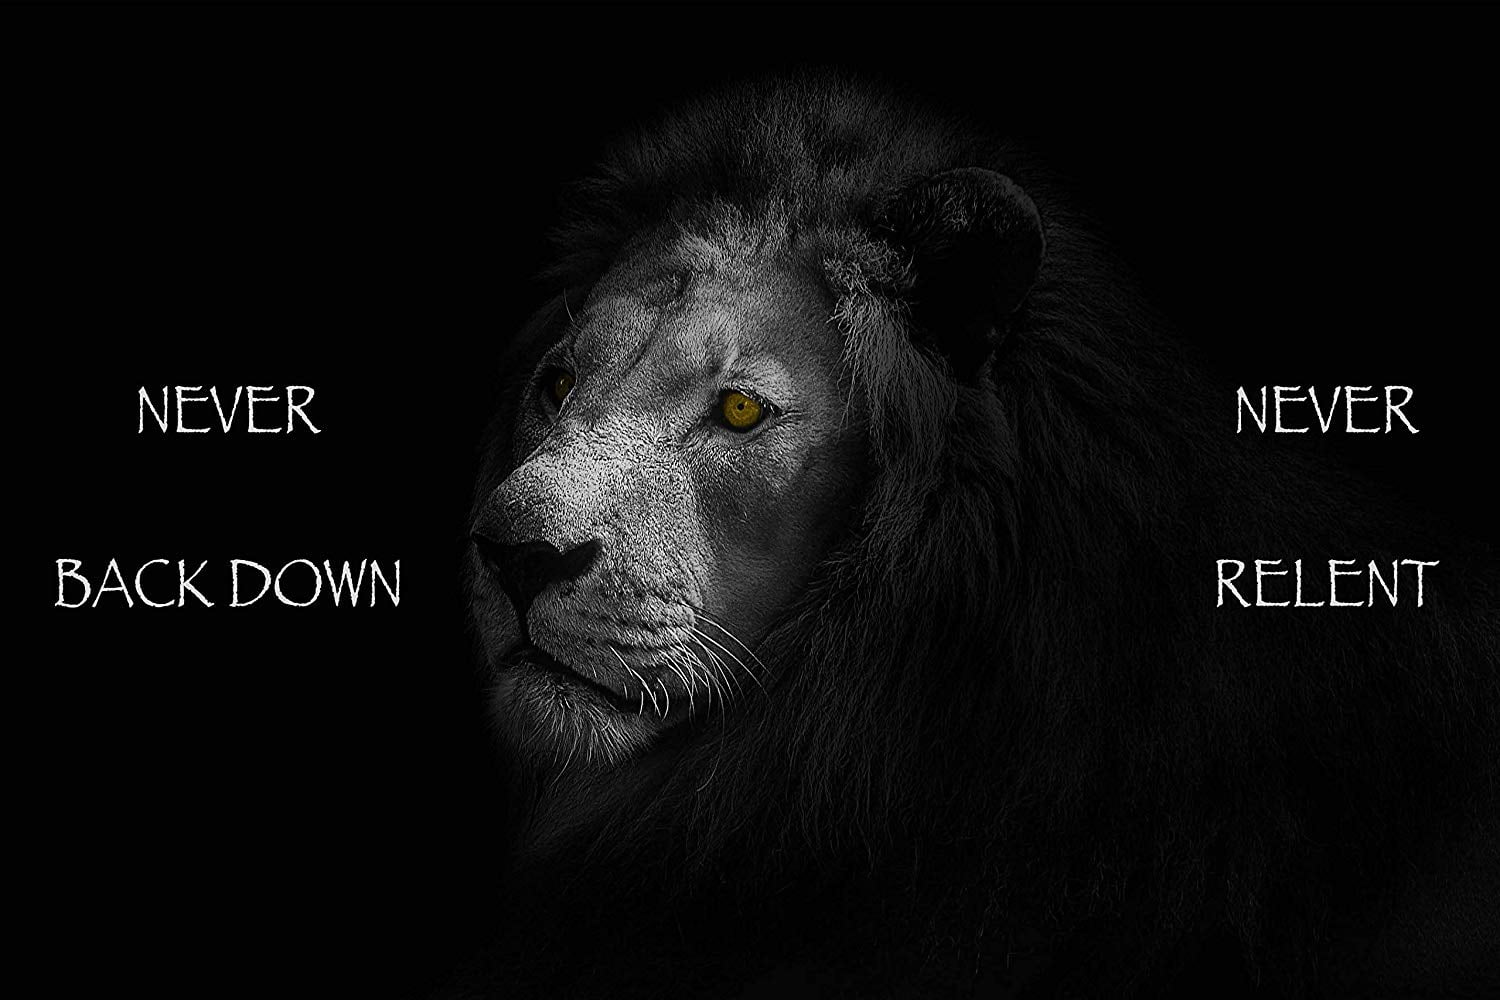 lion brave quotes